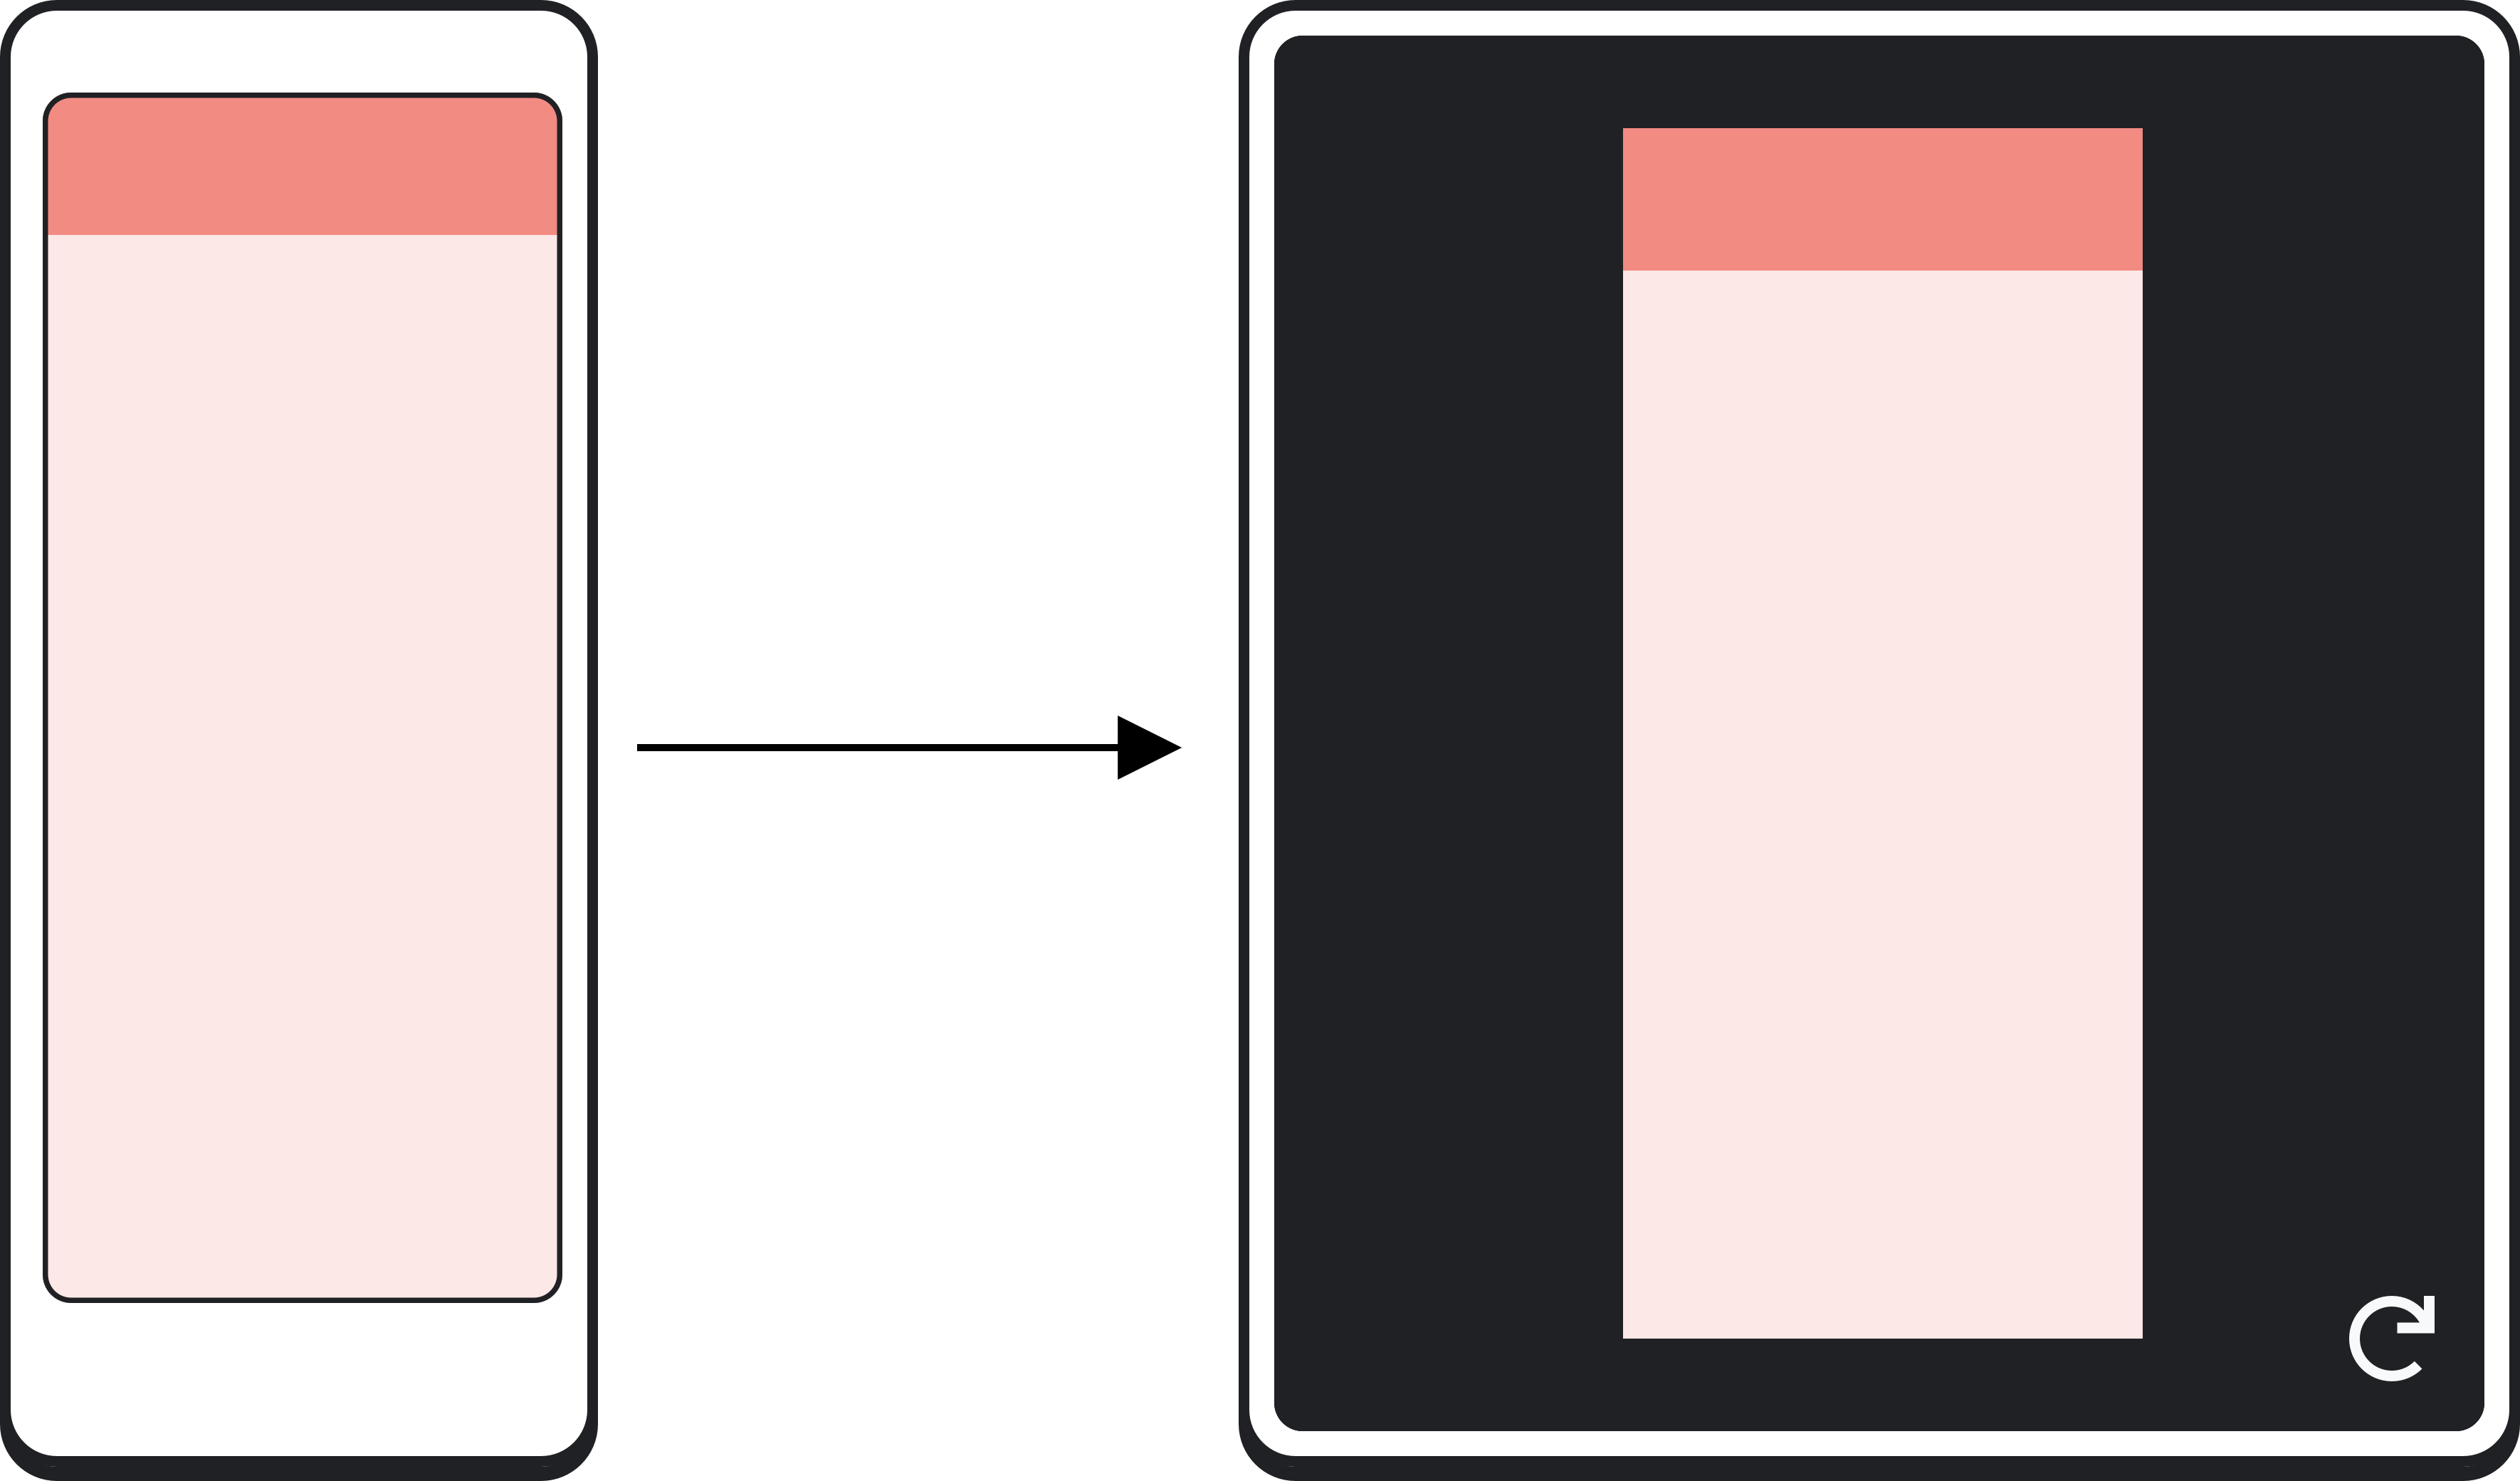 広げられた表示領域を部分的に埋めるアプリが表示されている折りたたみ式デバイス。